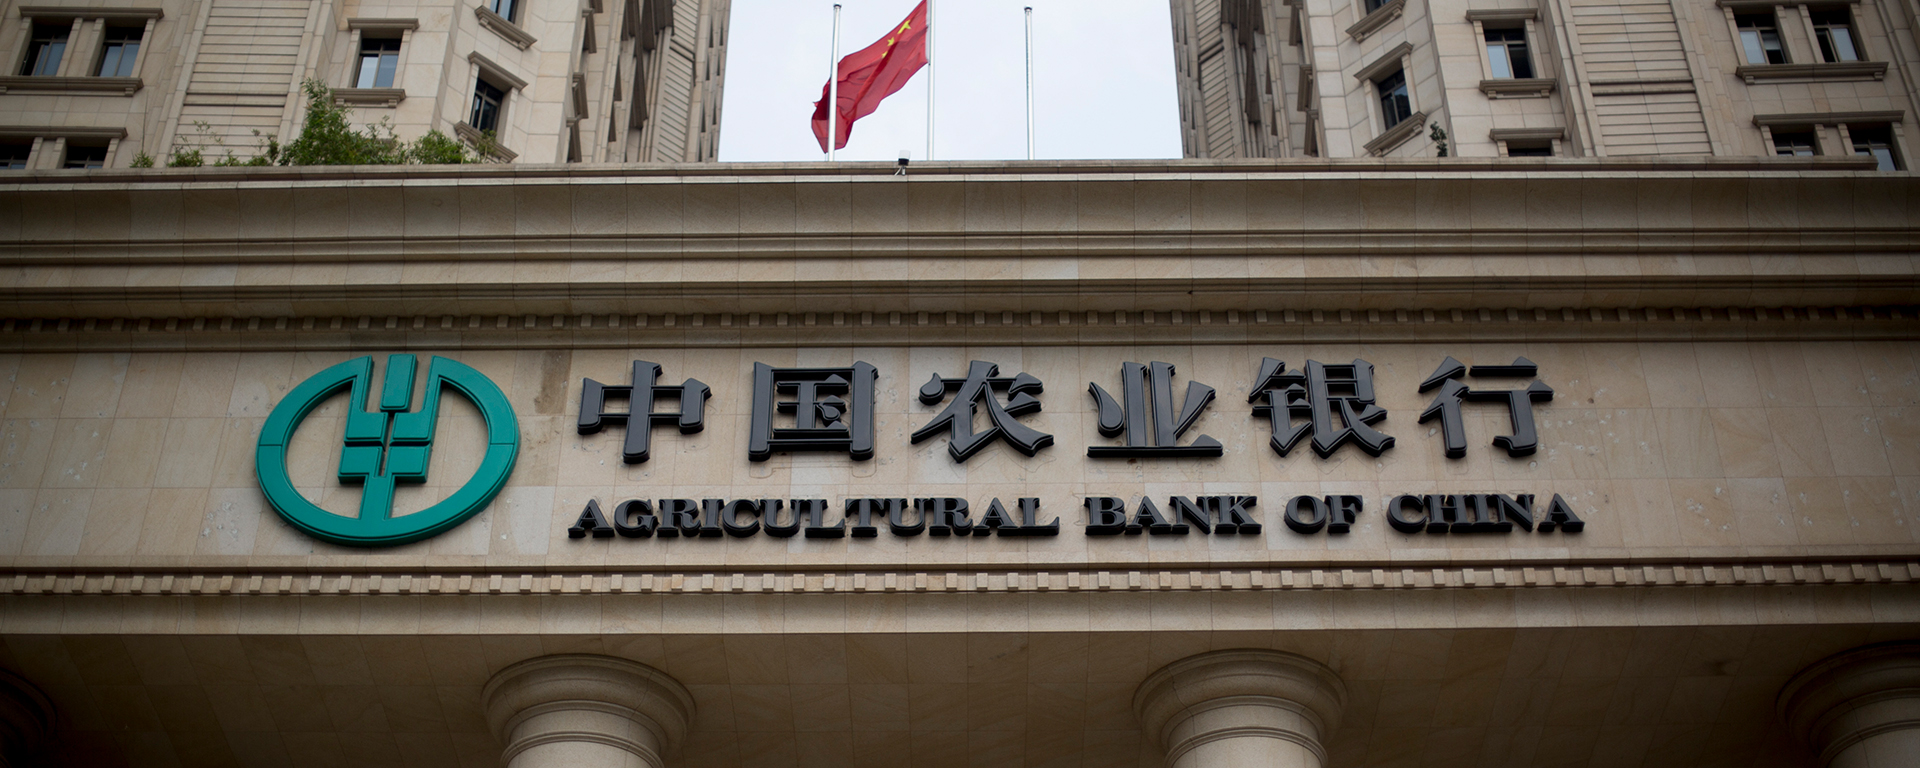 Abc bank. Банк сельскохозяйственного развития Китая. Банк Китая (Bank of China). Китайский сельскохозяйственный банк (Agricultural Bank of China Limited). ABC Bank Китай.